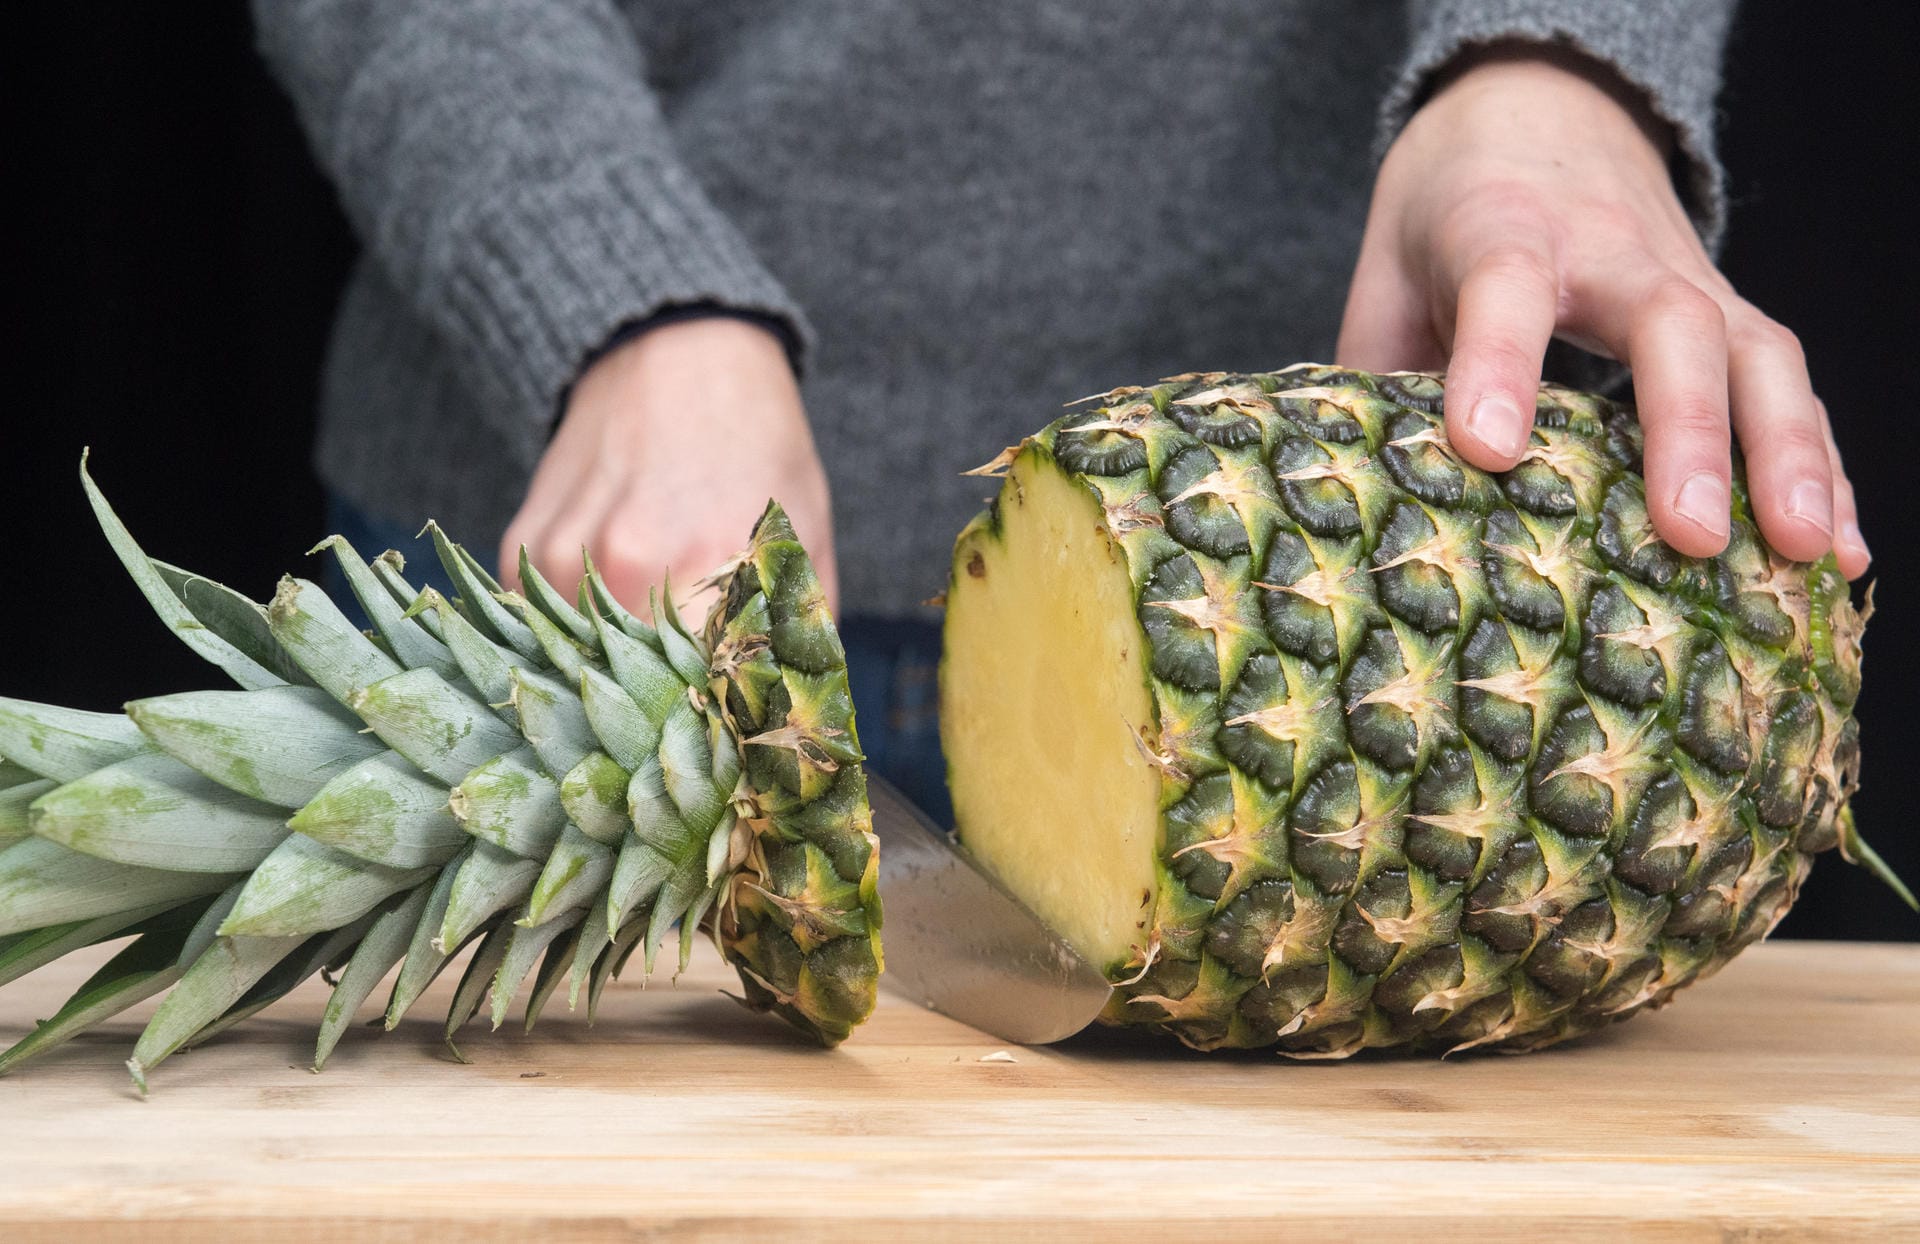 Ananas richtig aufschneiden: Schritt 1 – Ananas quer vor sich aufs Brett legen und mit einem mittelgroßen Messer den Blütenansatz abschneiden.